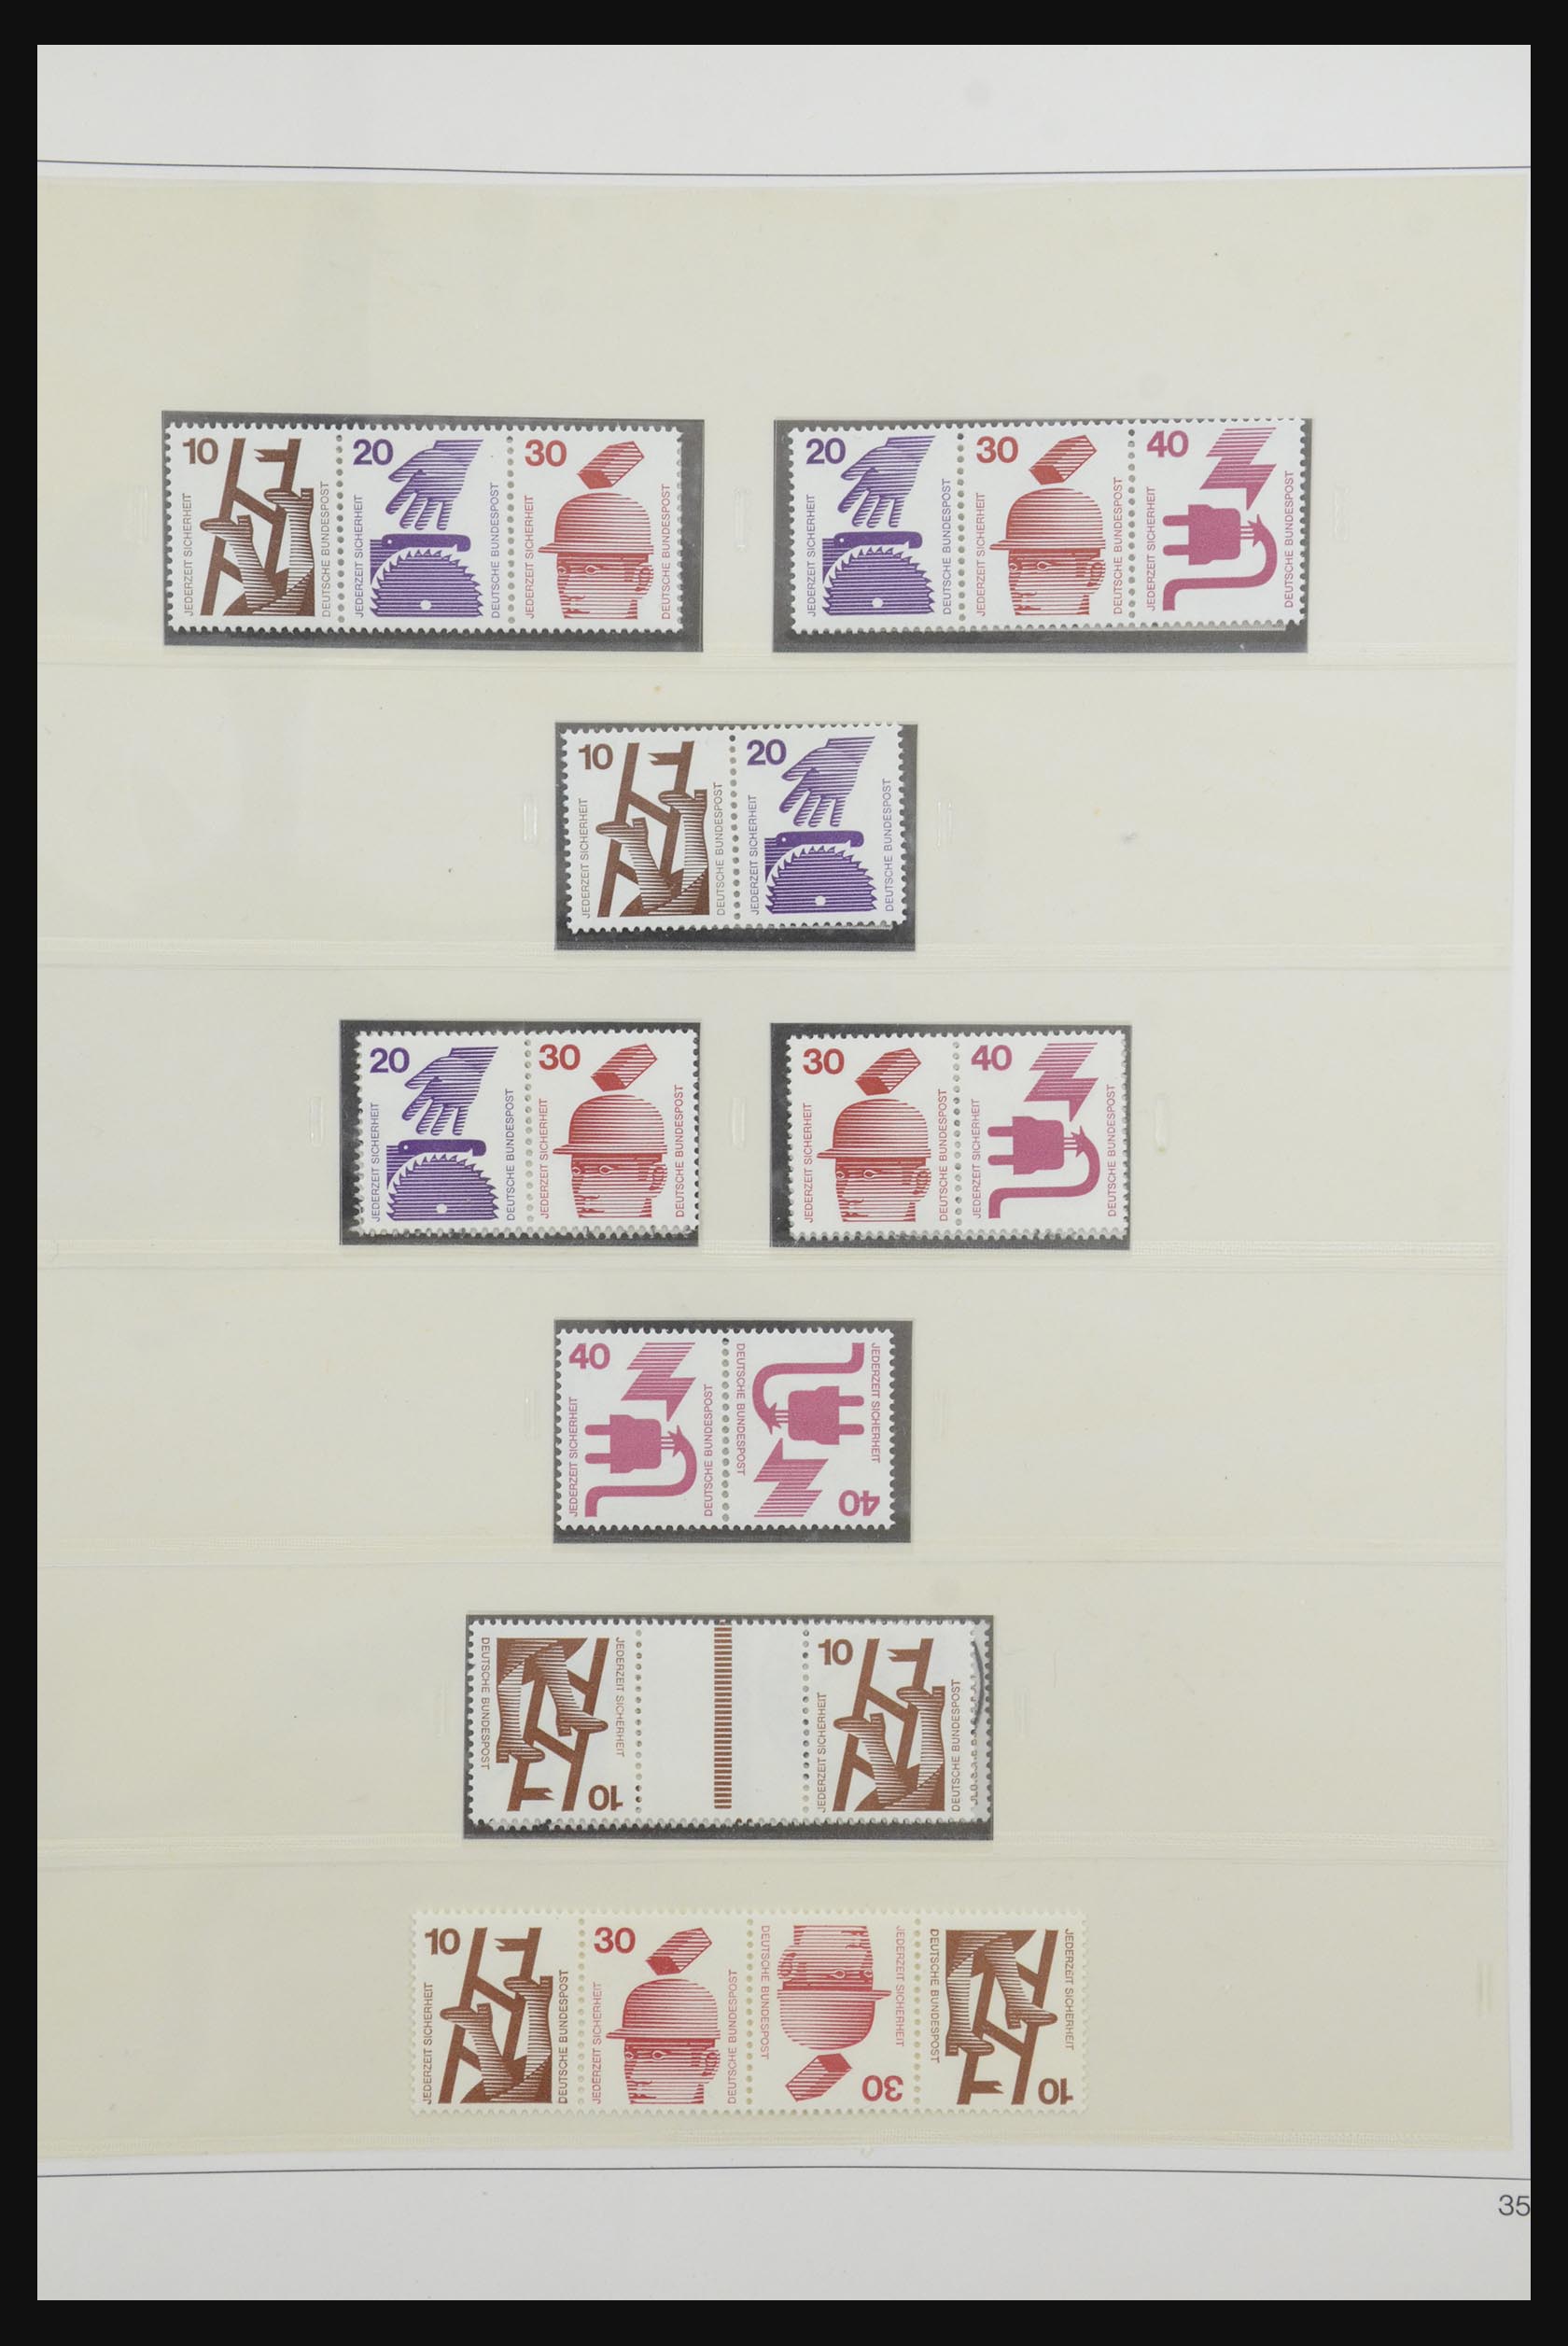 31842 049 - 31842 Bundespost combinaties 1951-2003.